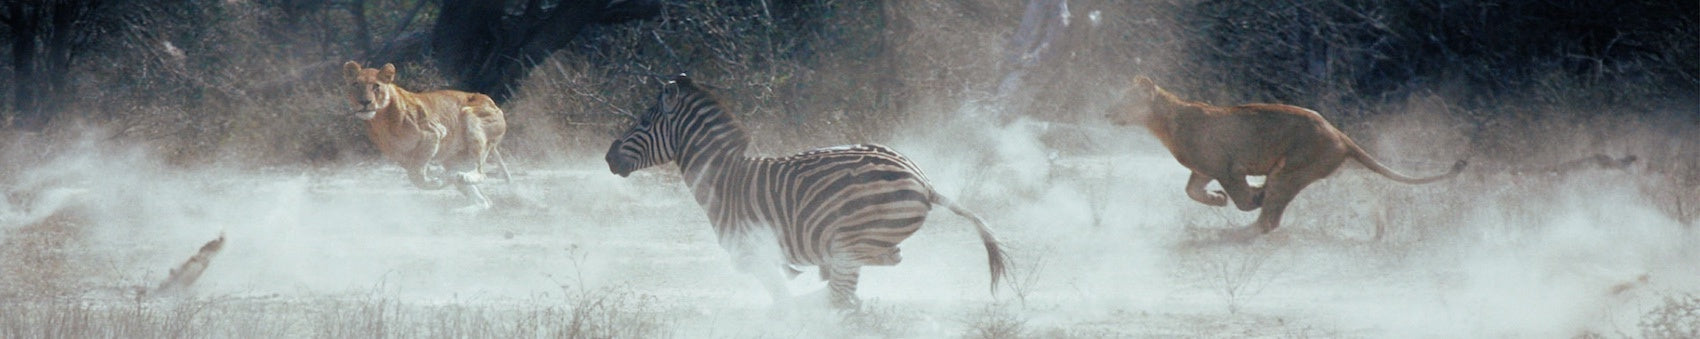 Deux Lionnes qui chassent un zebre